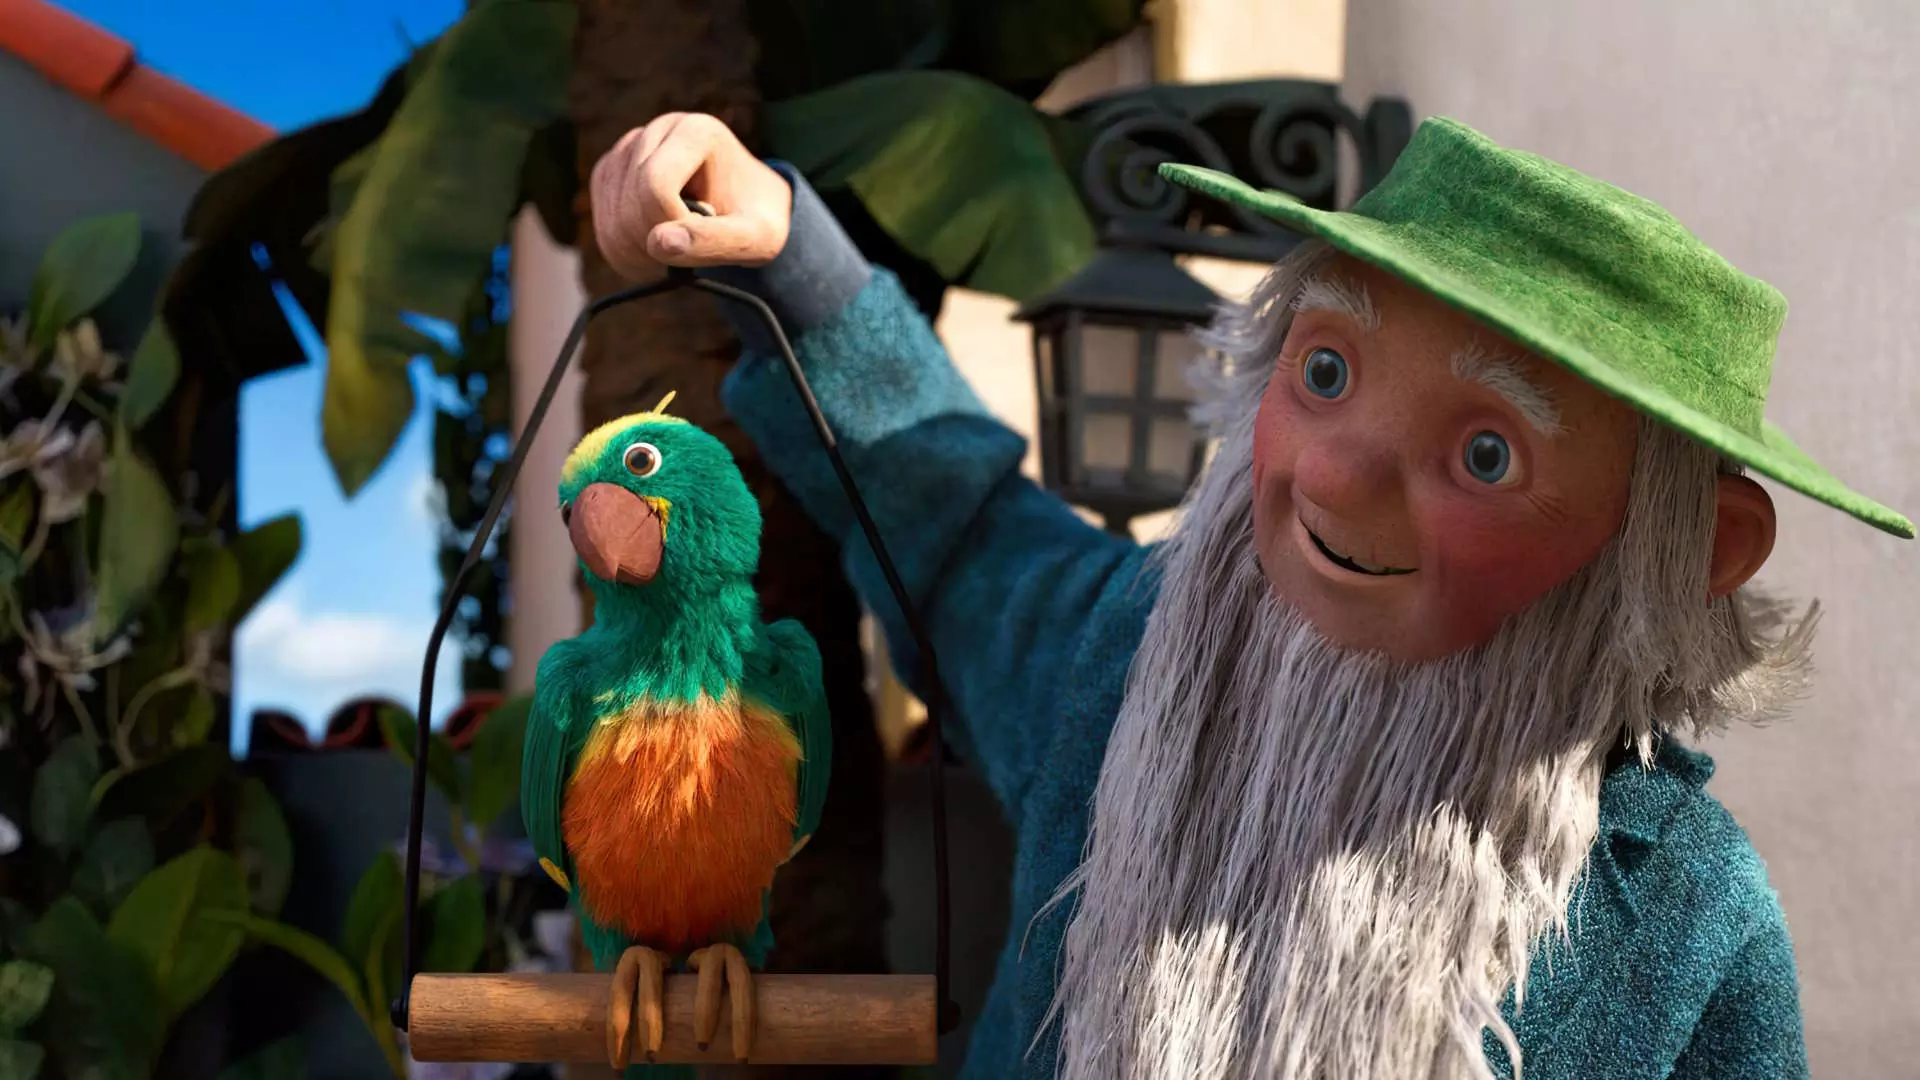 Animasjon. Halvnært bilde av en gammel mann. Han har langt hvitt skjegg og en grønn hatt. Han holder opp et fuglestativ hvor det sitter en papegøye. Mannen ser glad ut.